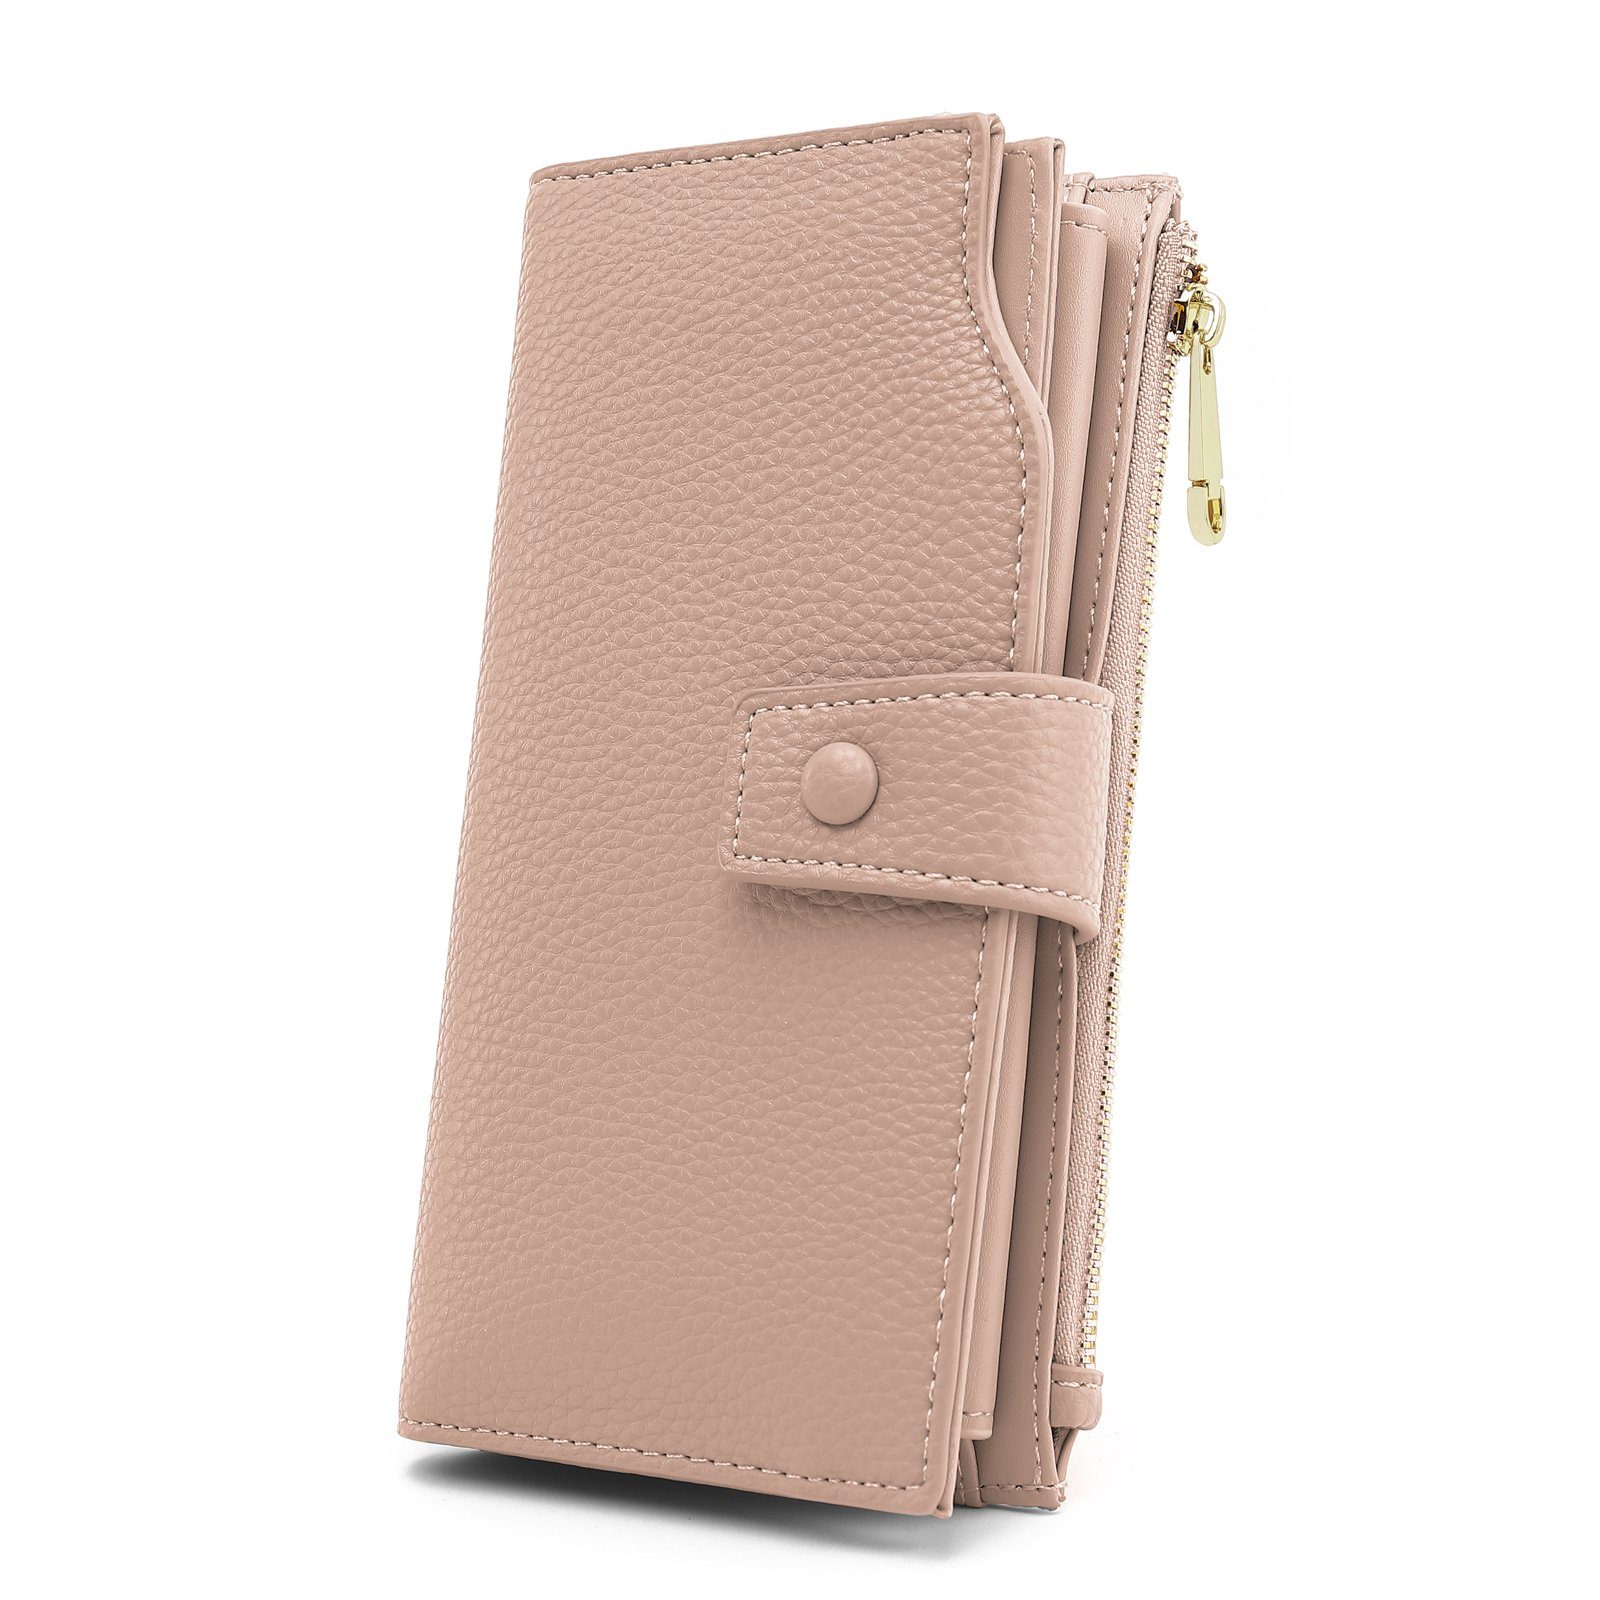 TAN.TOMI Brieftasche Portemonnaie Damen, Geldbörse für Frauen mit Lanyard (Brieftasche), Geldbörse aus hochwertigem Kunstleder Altrosa